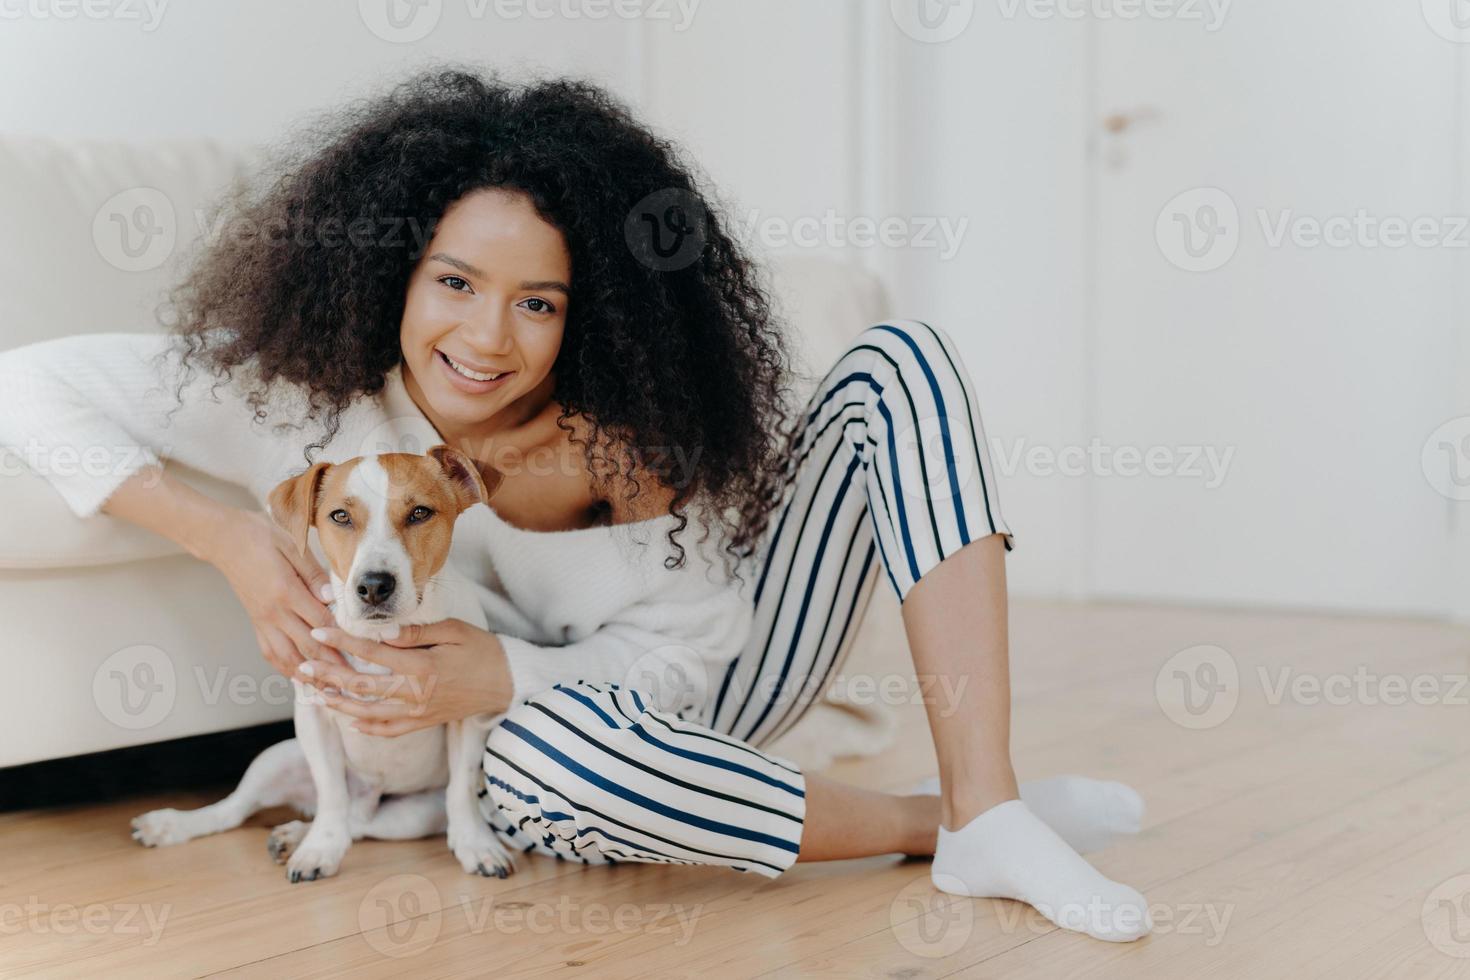 inomhusbild av nöjd lockig kvinnlig modell poserar för foto med jack russell terrierhund, omfamnar husdjur ömt, sitter på golvet med älskade djur nära en bekväm soffa, umgås tillsammans